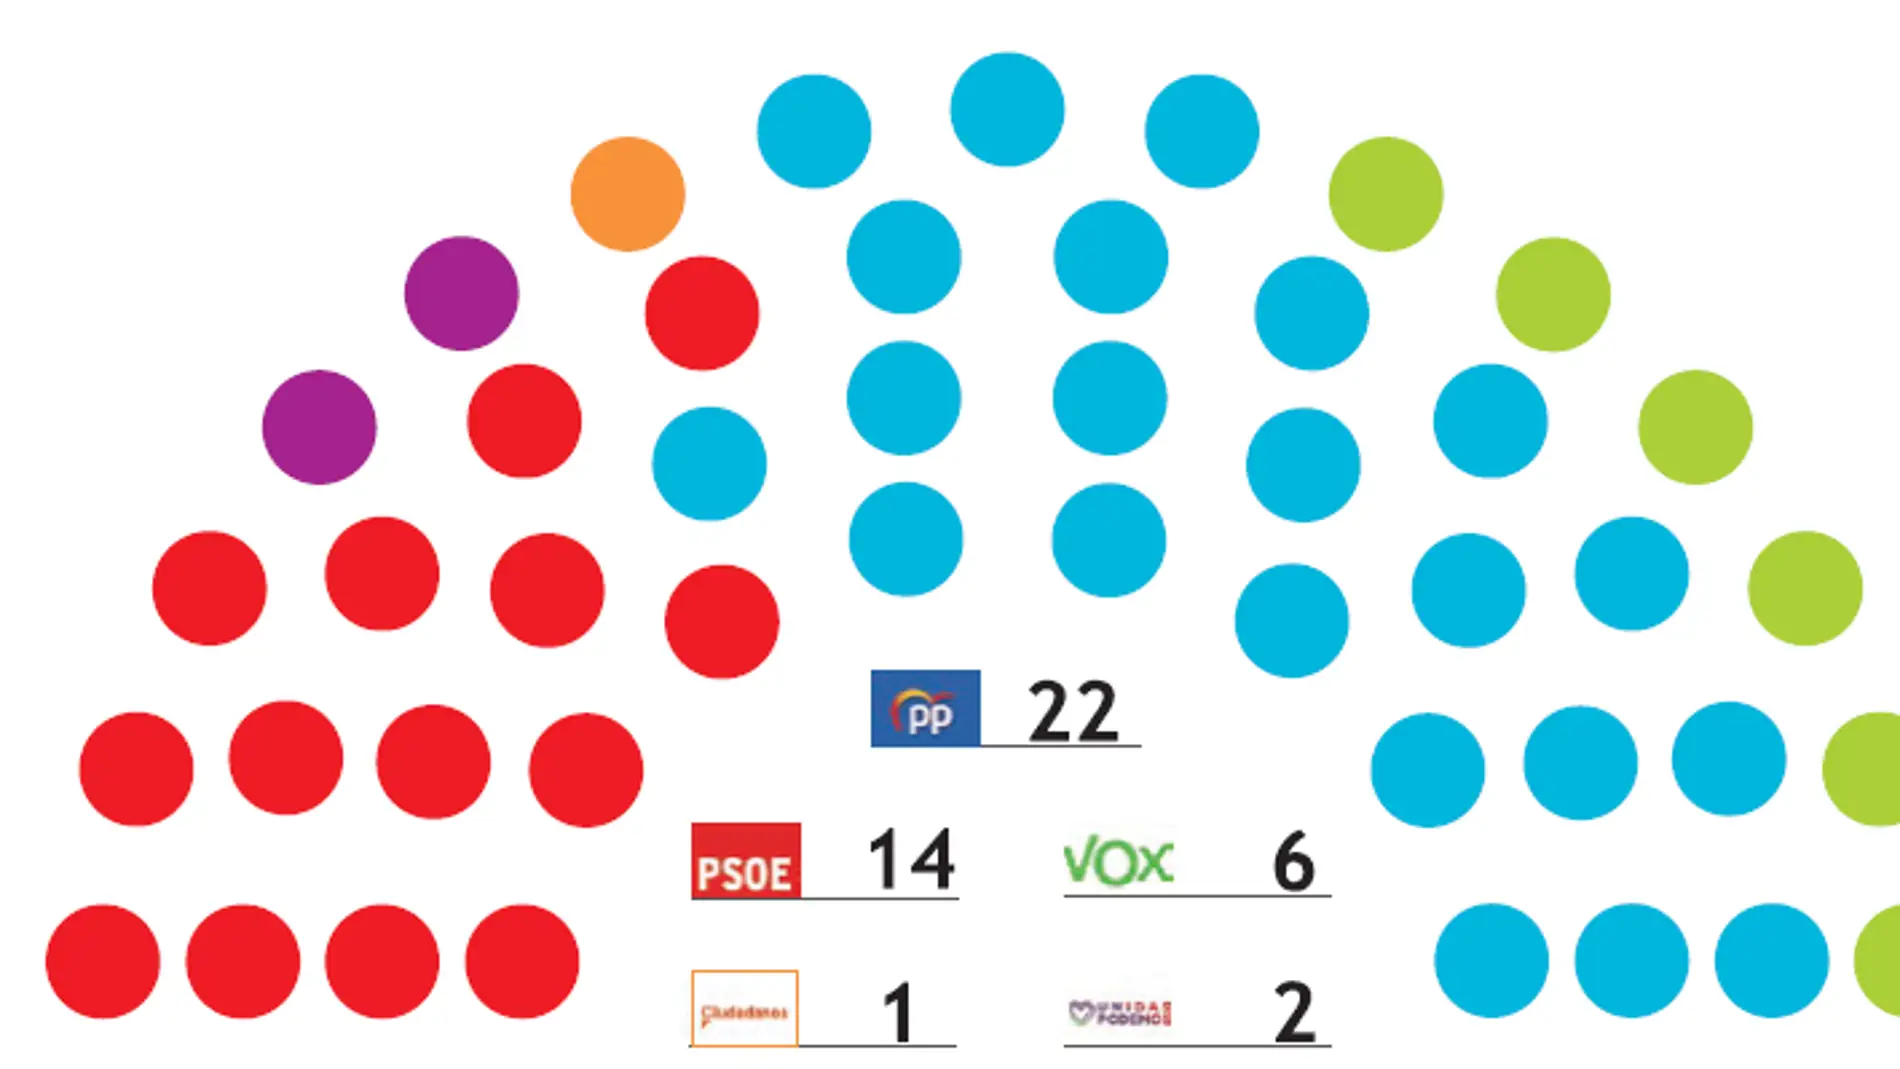 El PP roza la mayoría absoluta en la Región de Murcia con 22 escaños